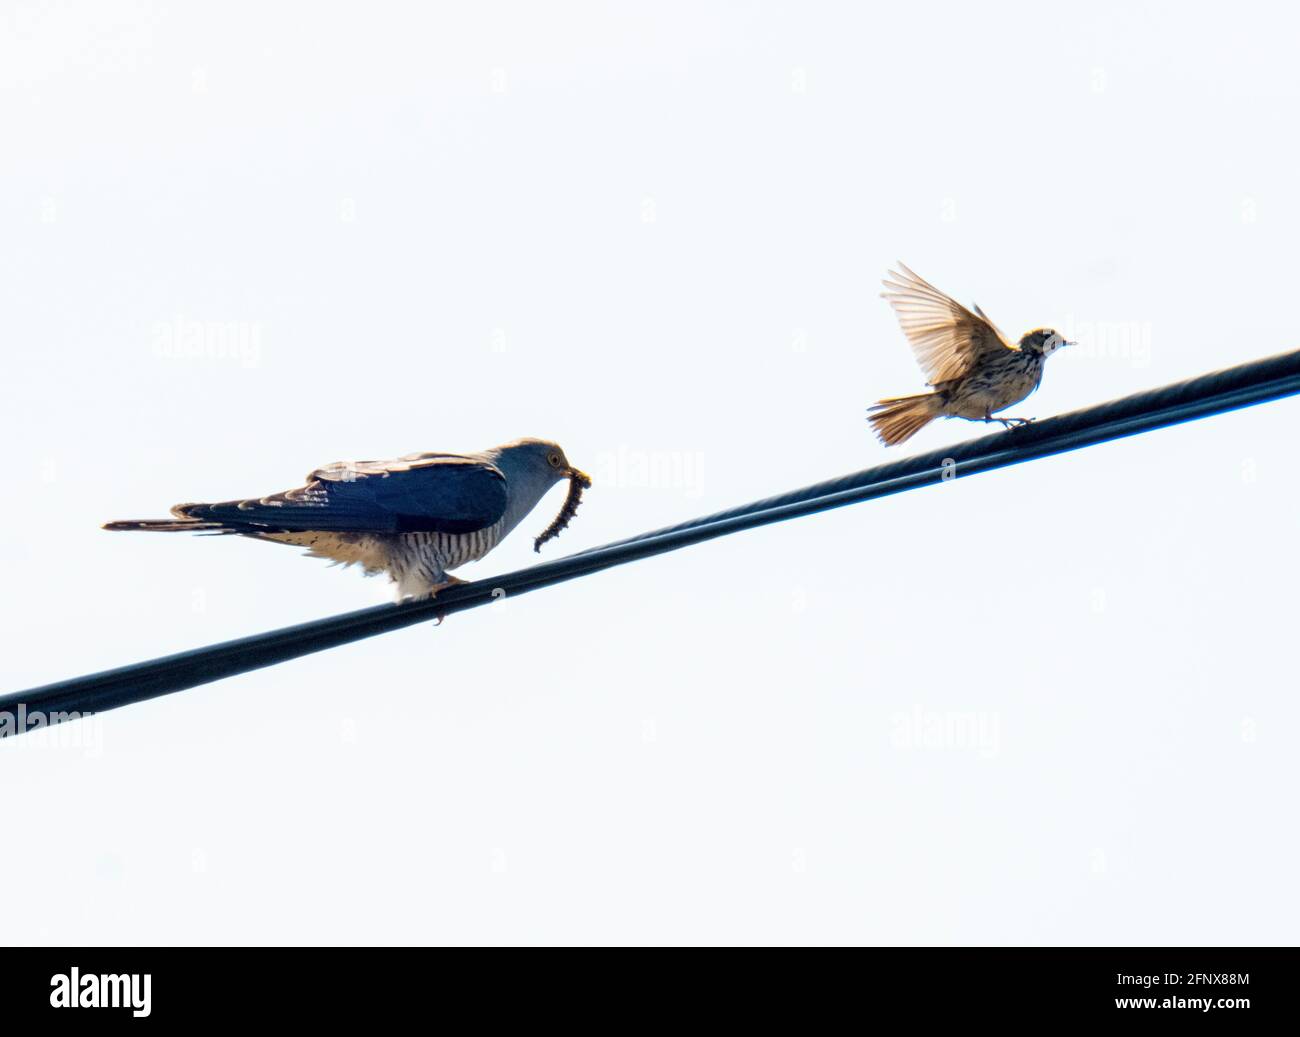 Common Cuckoo (Cuculus canorus) perché sur une ligne télégraphique tente d'attirer un Meadow Pipit avec une chenille, Isle of Colonsay, Écosse, Royaume-Uni. Banque D'Images